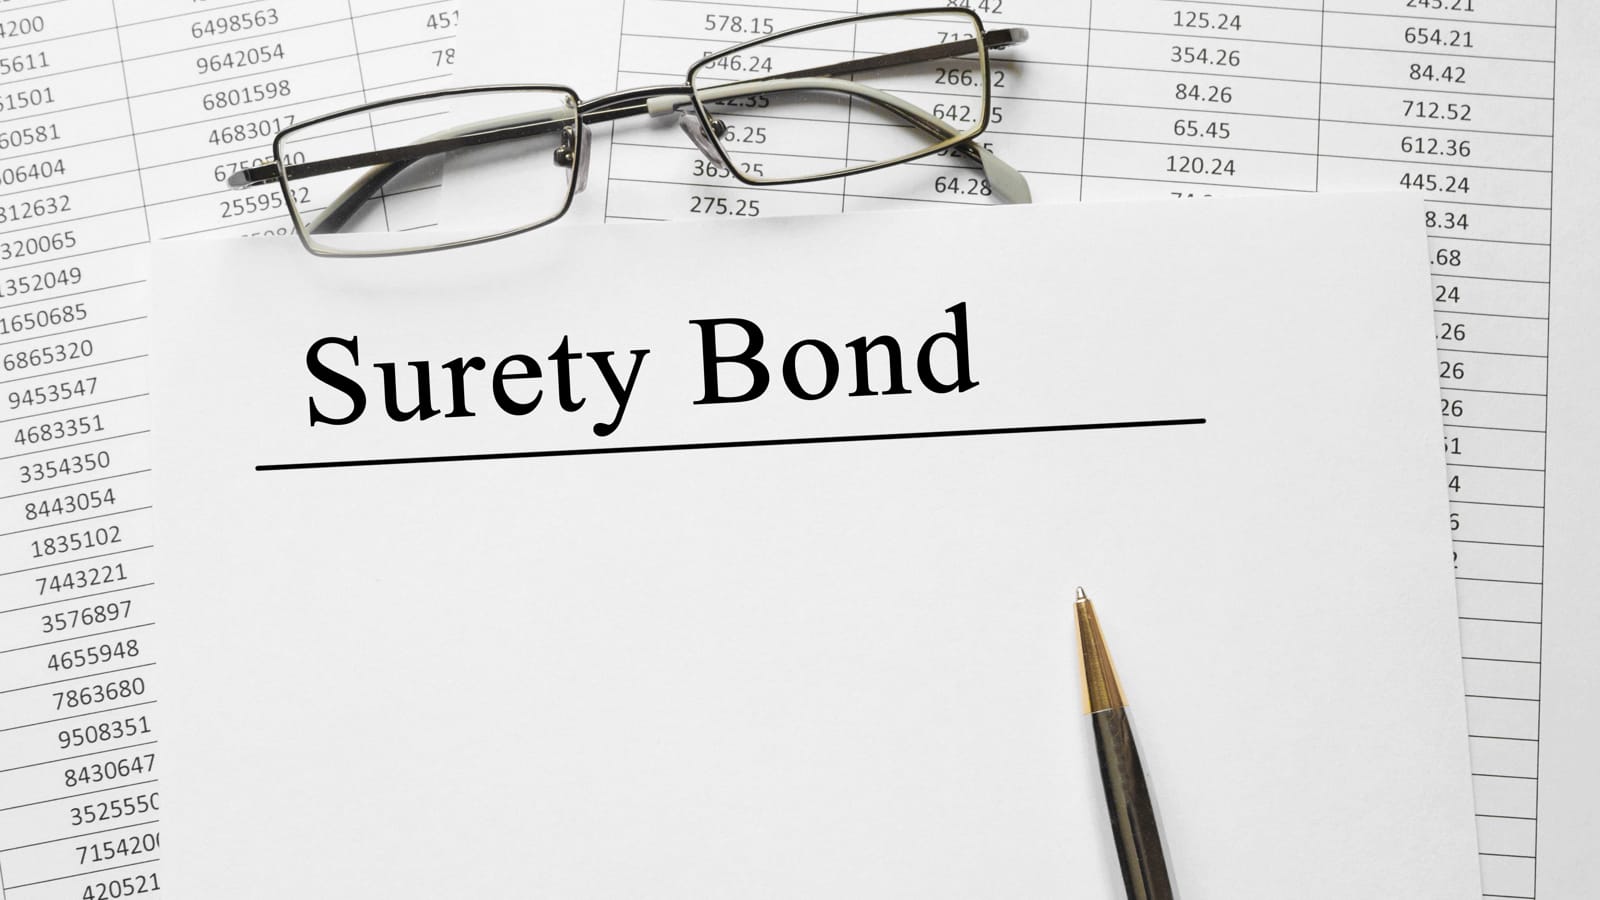 Surety bond document